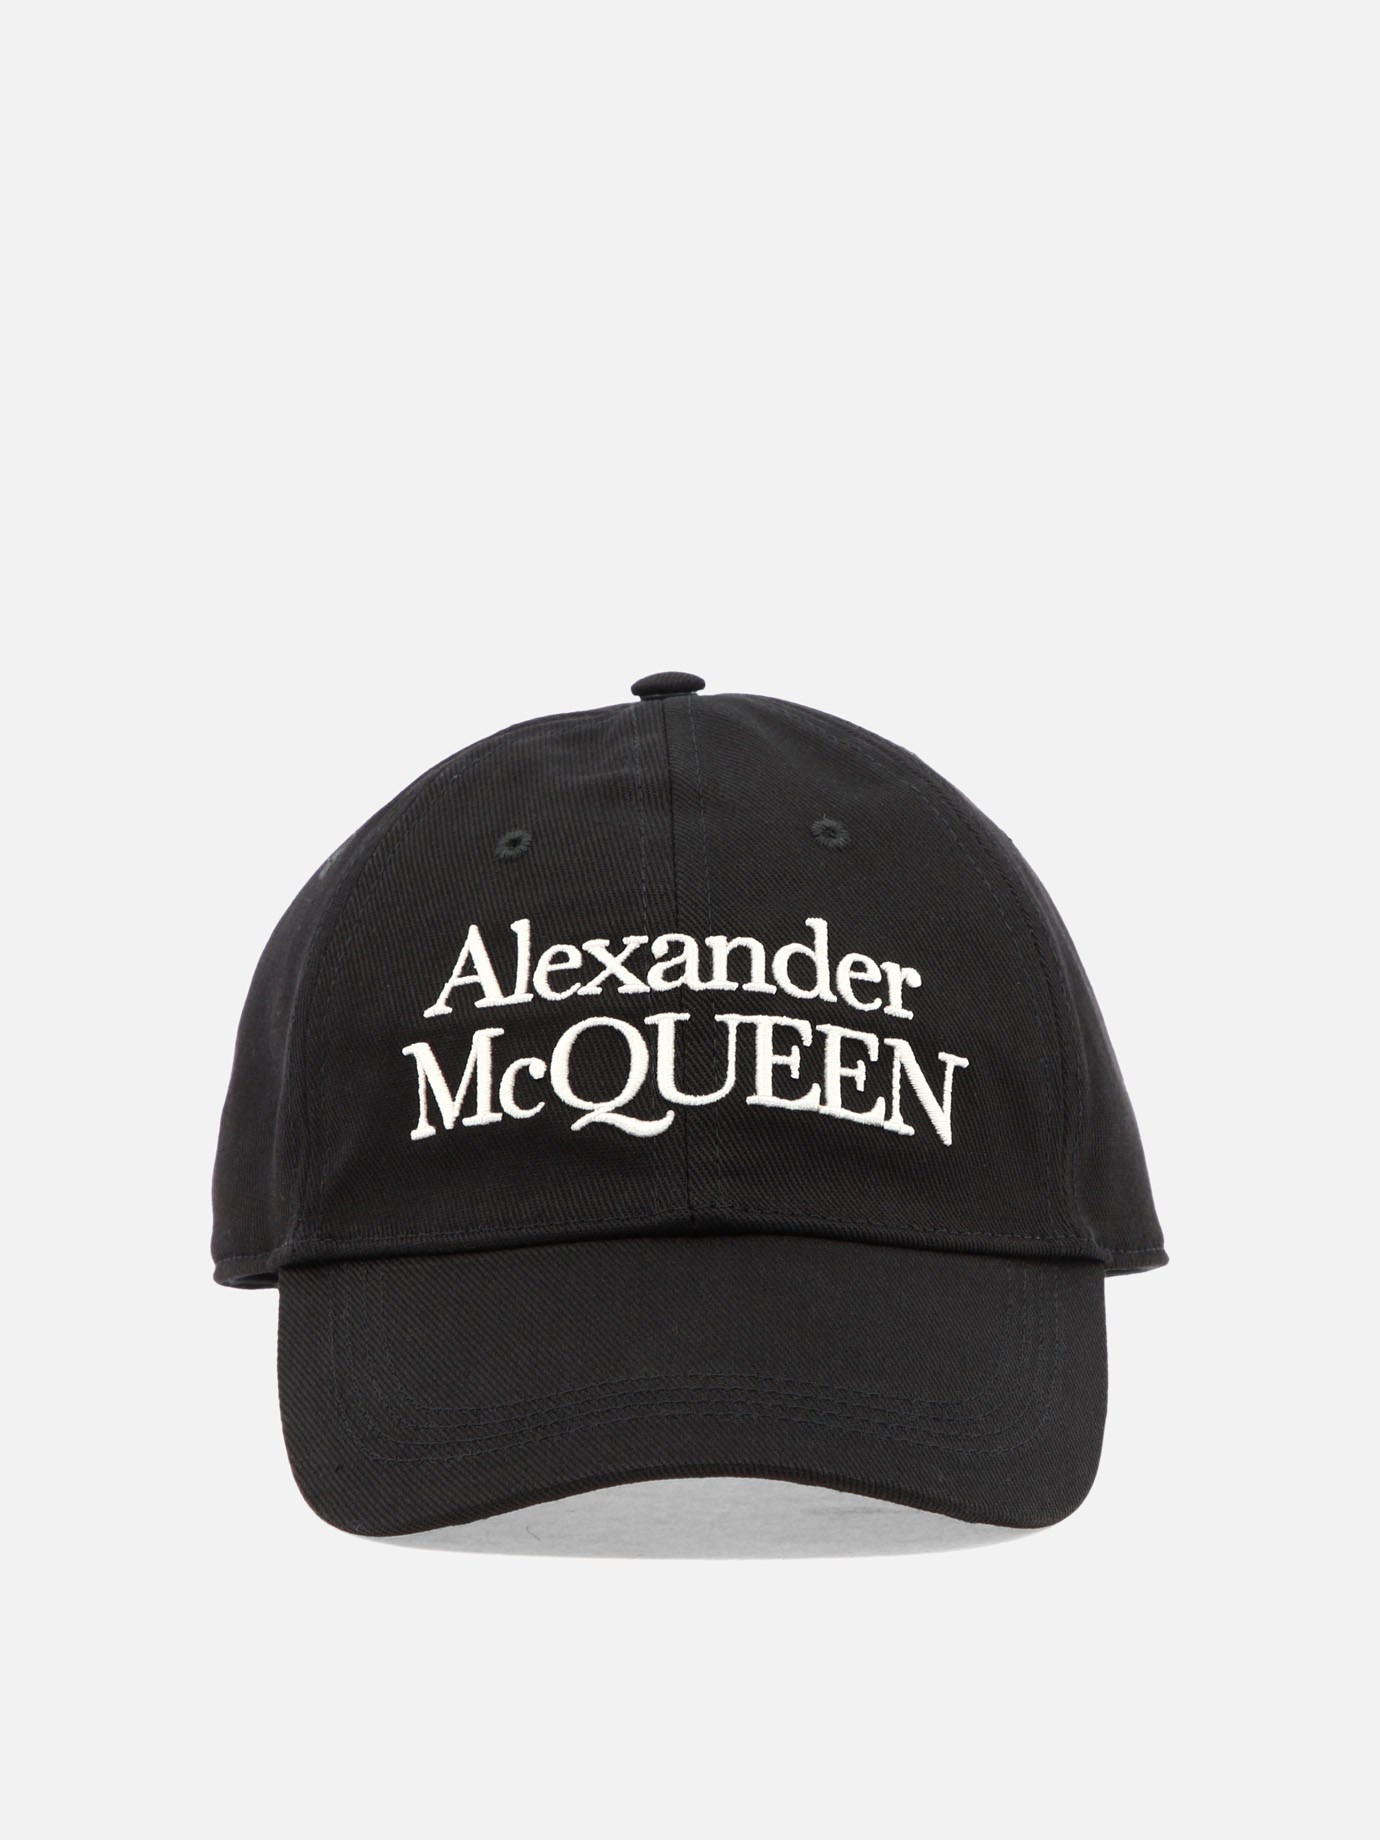  McQueen Signature  capby Alexander McQueen - 5